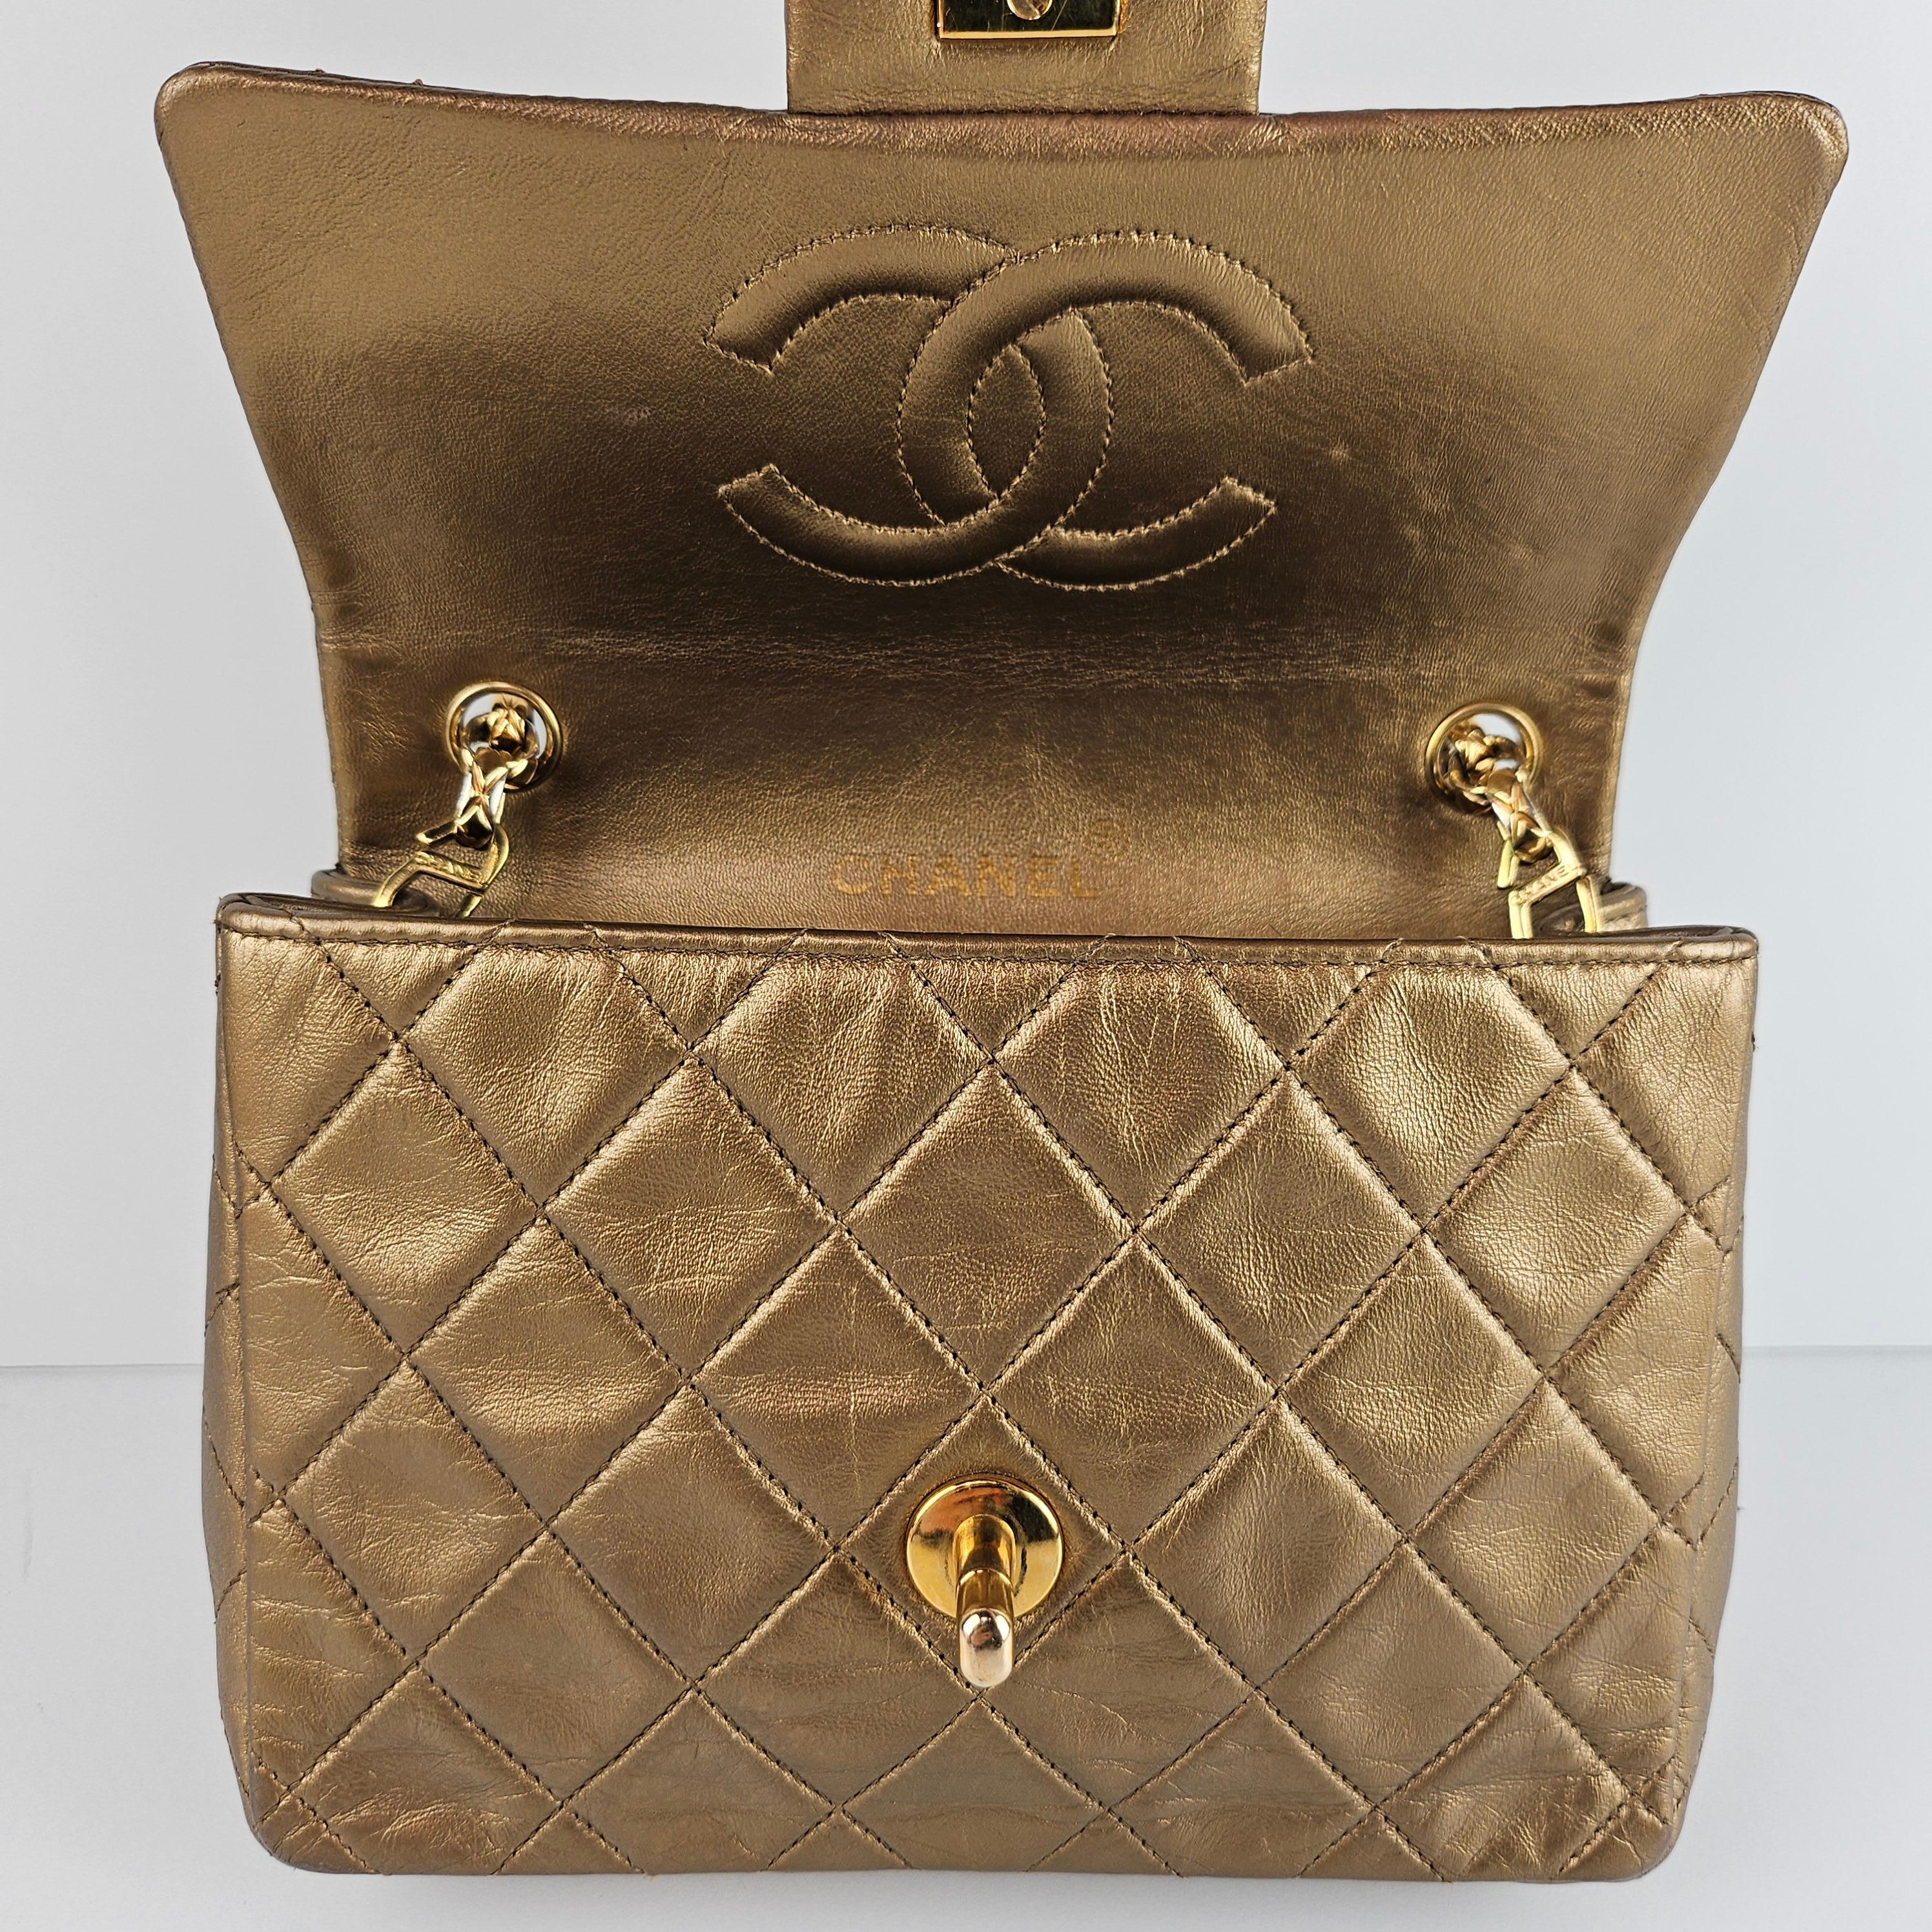 Chanel - Mini sac à rabat Bijoux en cuir doré métallisé matelassé 4